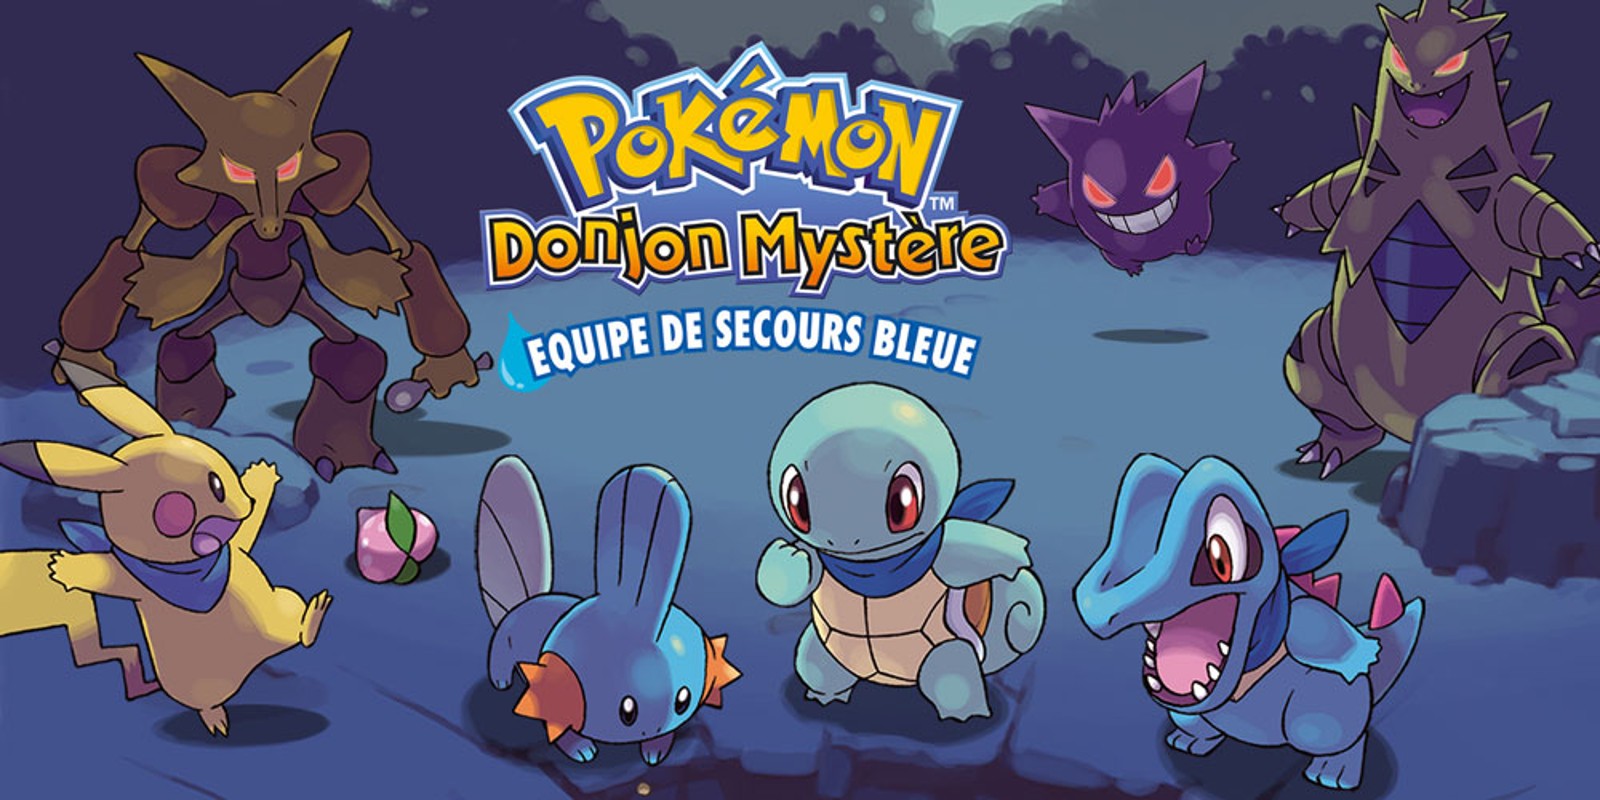 Pokémon Donjon Mystère: Equipe de Secours Bleue